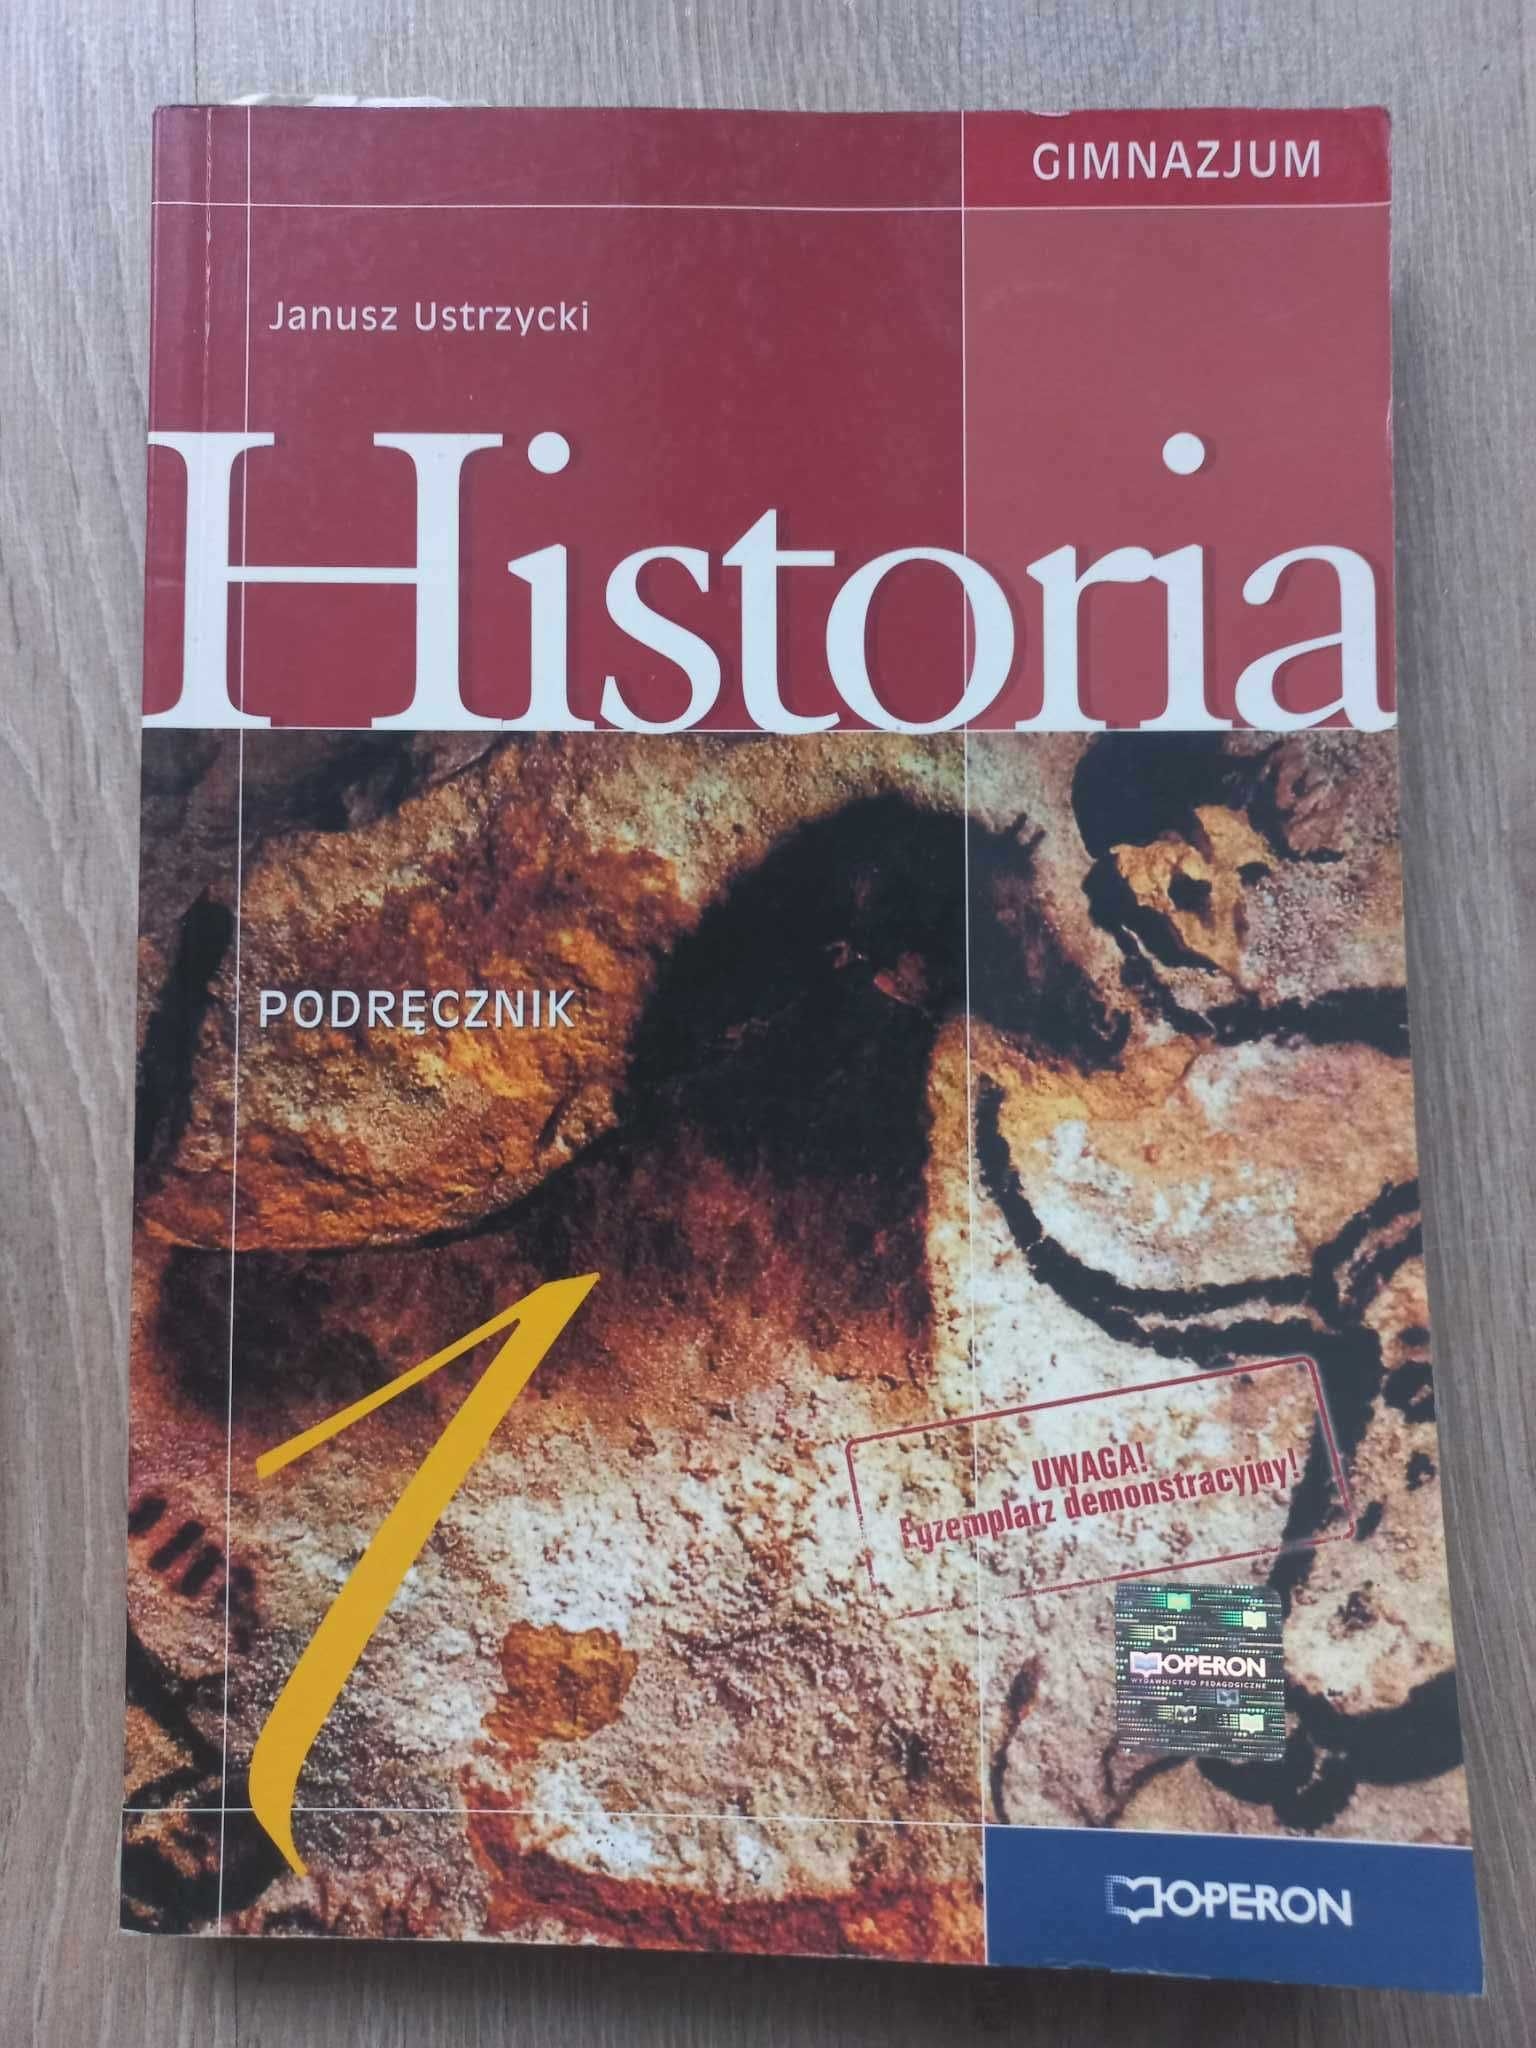 Historia 1 podręcznik gimnazjum Janusze Ustrzycki